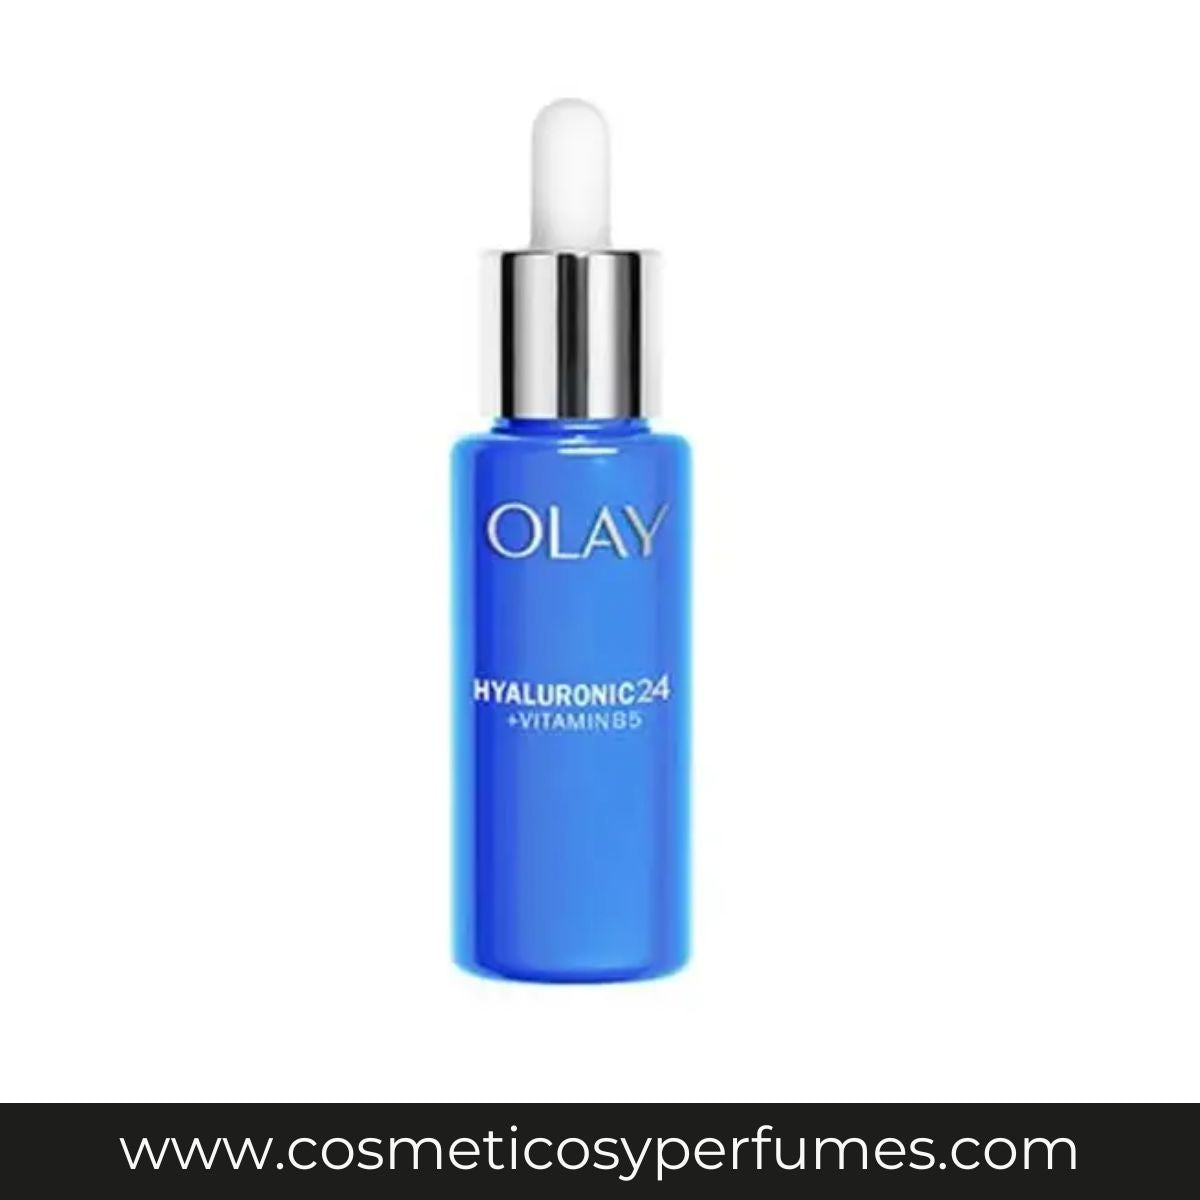 Olay - Hyaluronic 24 + Vitamin B5 - Sérum de Día Facial Hidratante  40ml